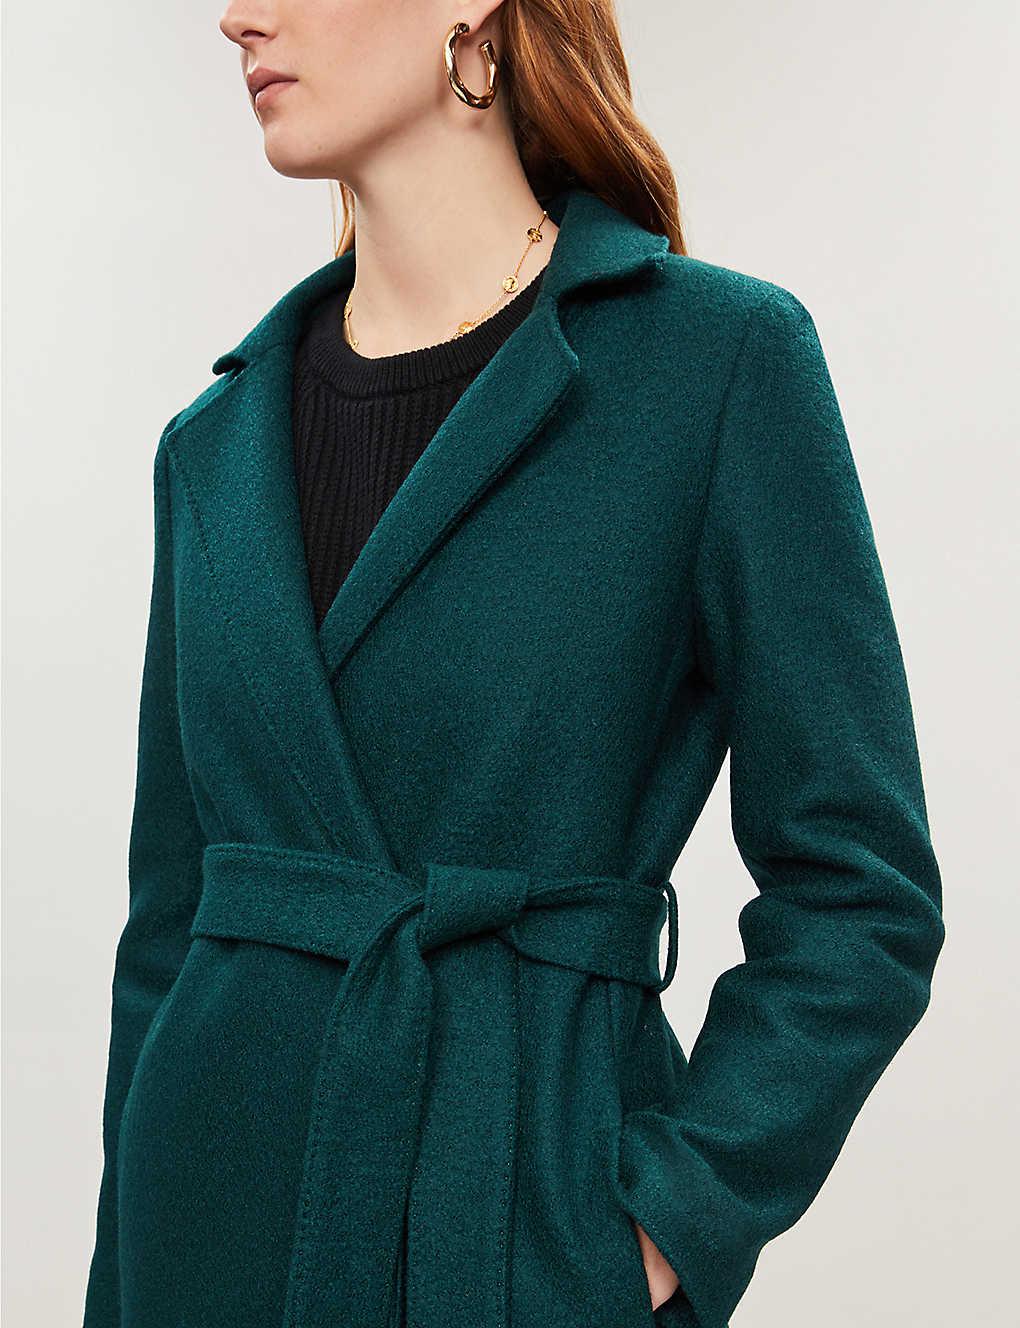 Ted Baker Chelsyy Wool Coat in Green | Lyst